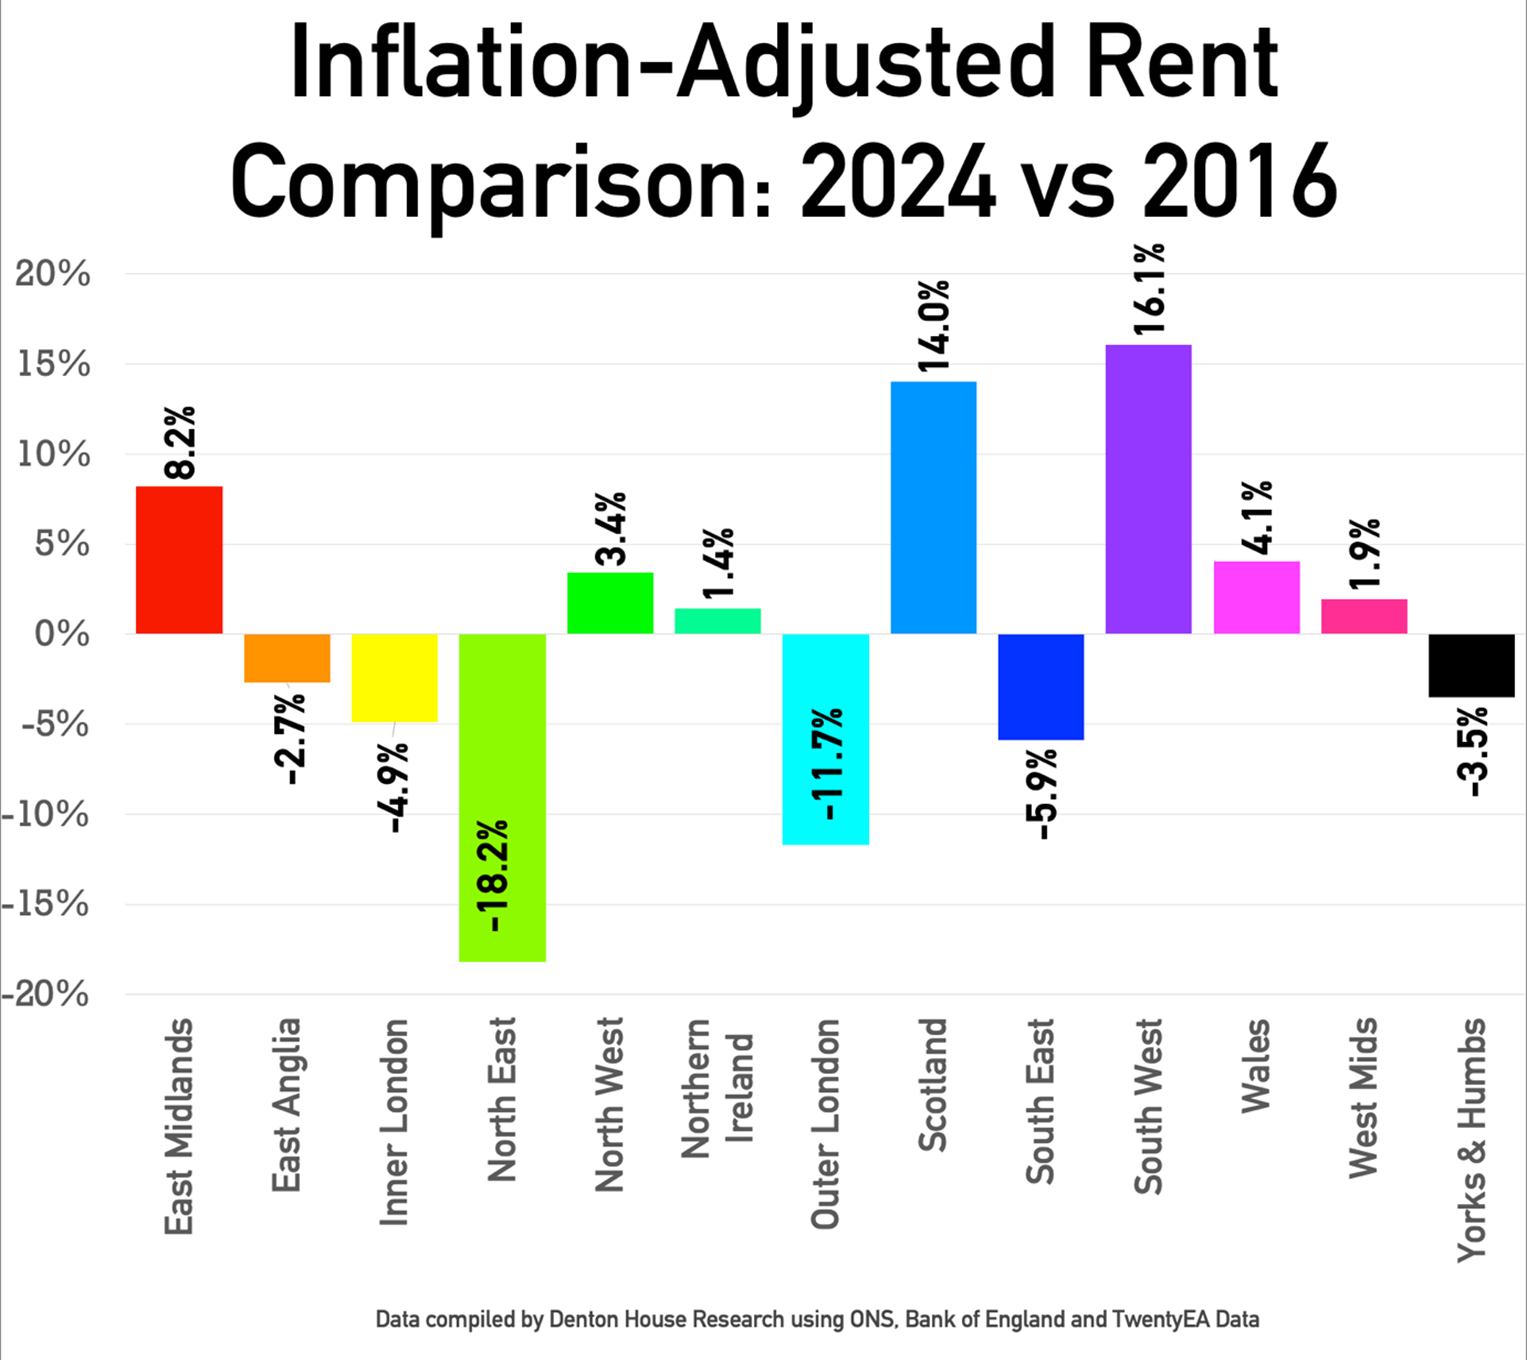 Inflation-Adjusted Rent Comparison: 2024 vs 2016